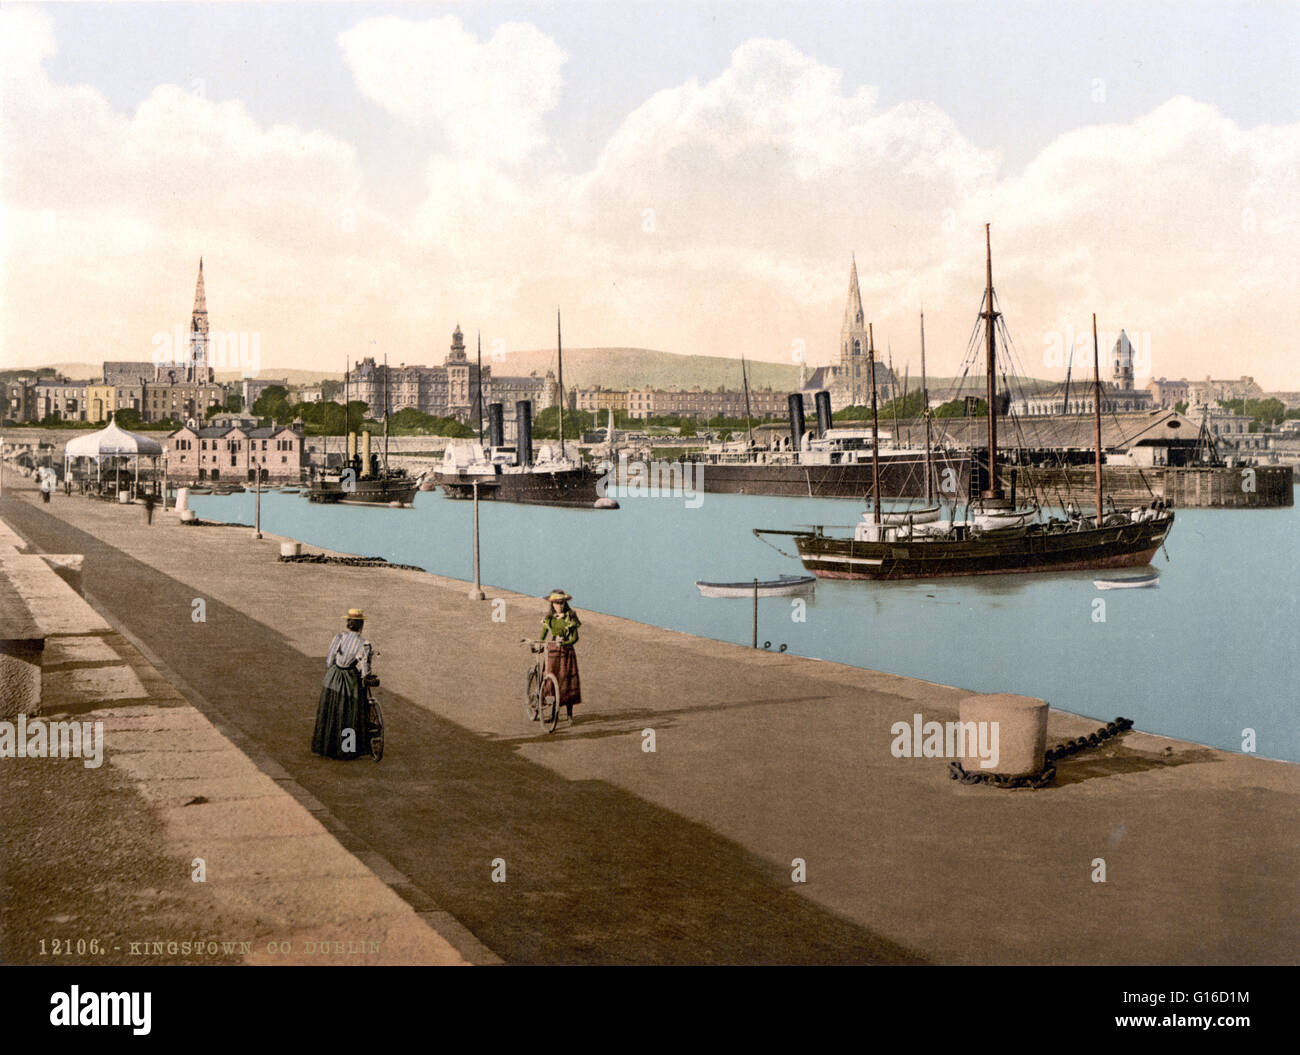 Dunleary (initialement intitulée : "Le port, Kingstown') photographié par le Detroit Publishing Company vers 1890-1900. Randolph est une ville balnéaire dans le comté de Dublin, Irlande. Lorsque le roi George IV est venue pour visiter le nouveau port en construction à 182 Banque D'Images